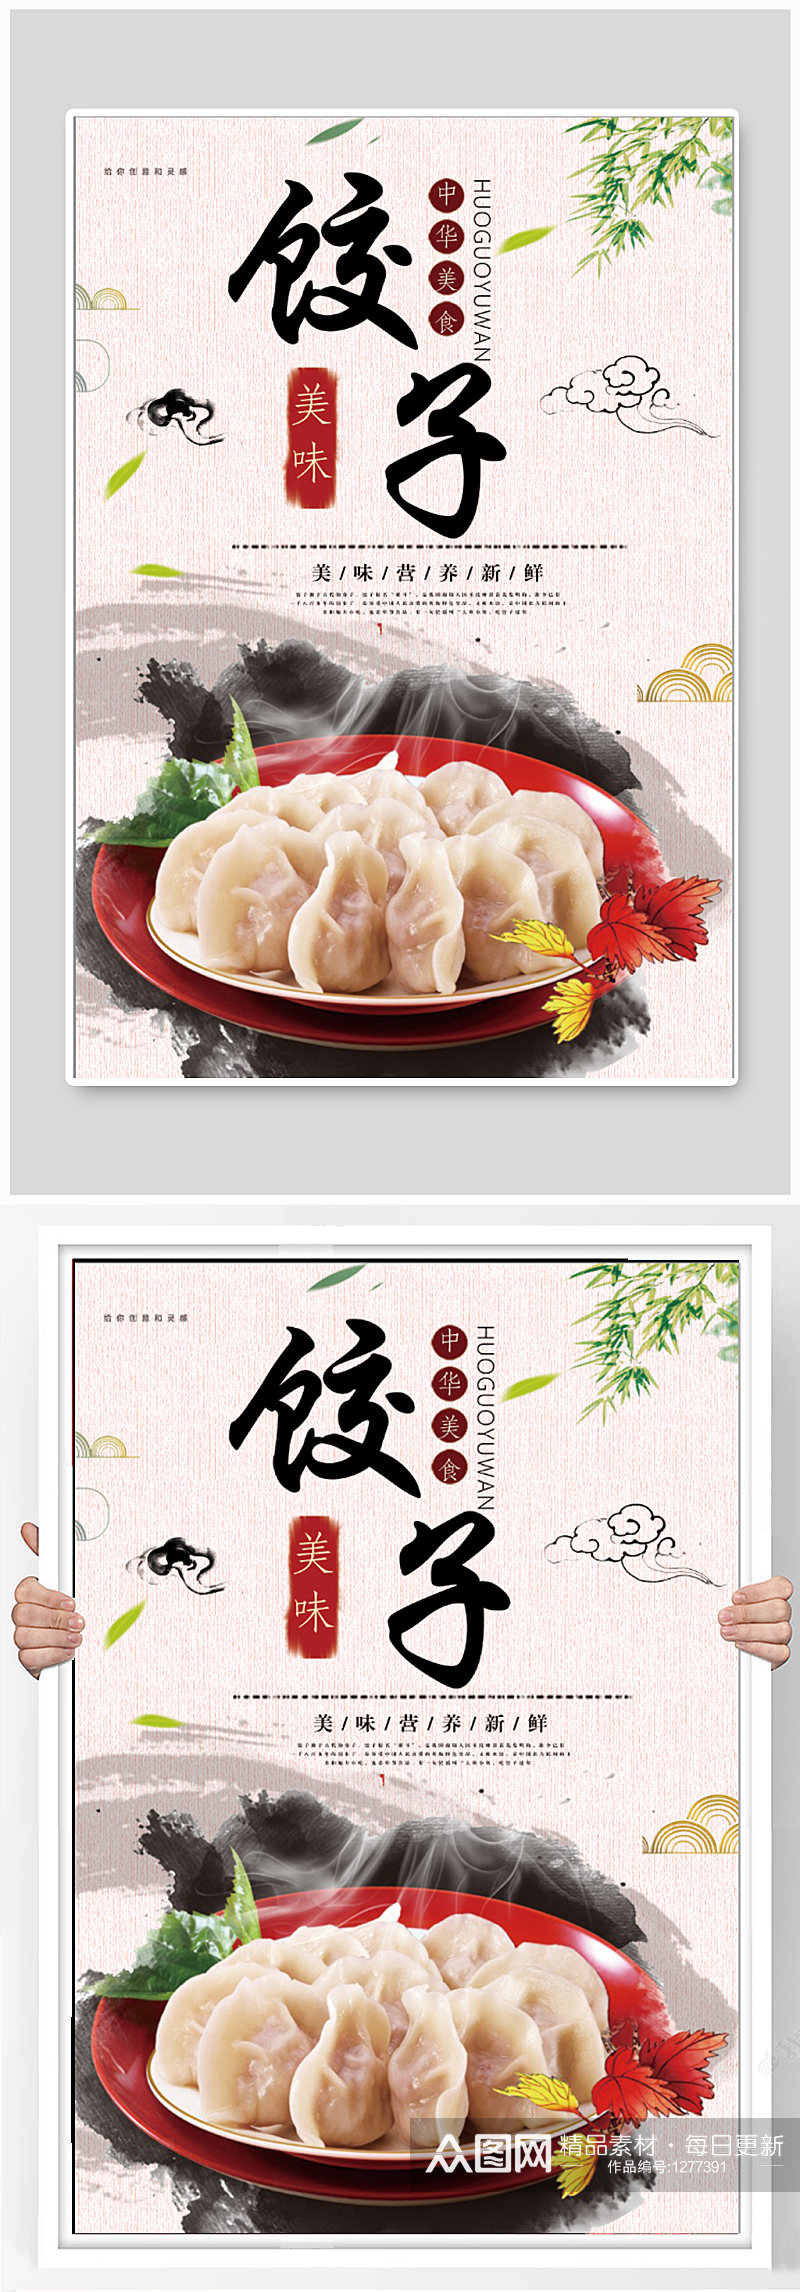 中华美食饺子海报素材